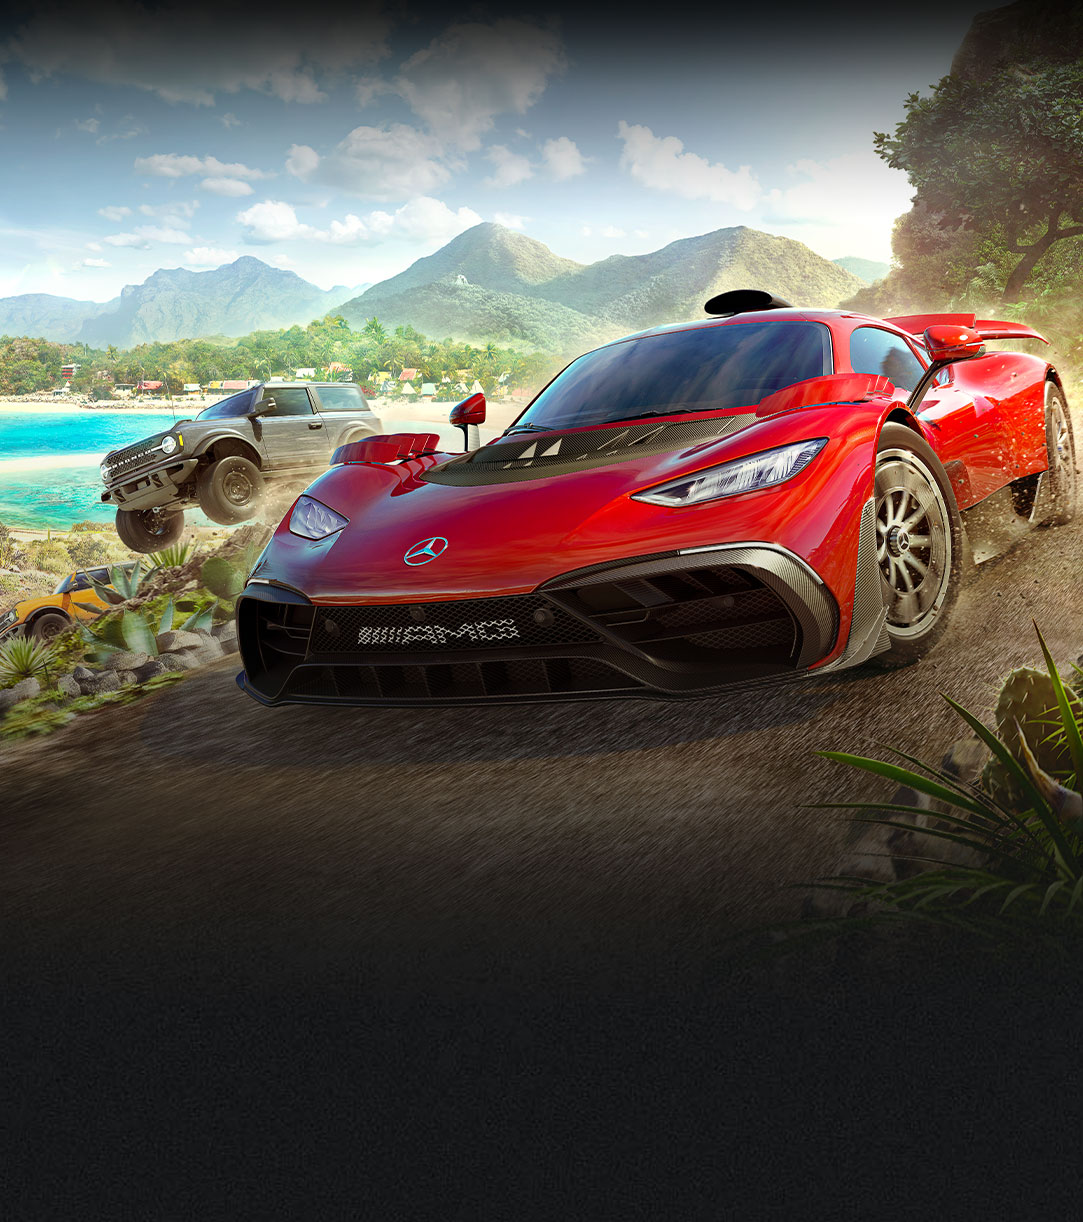 Auto's uit Forza Horizon 5 rijden snel over een onverharde weg met water en veel planten.